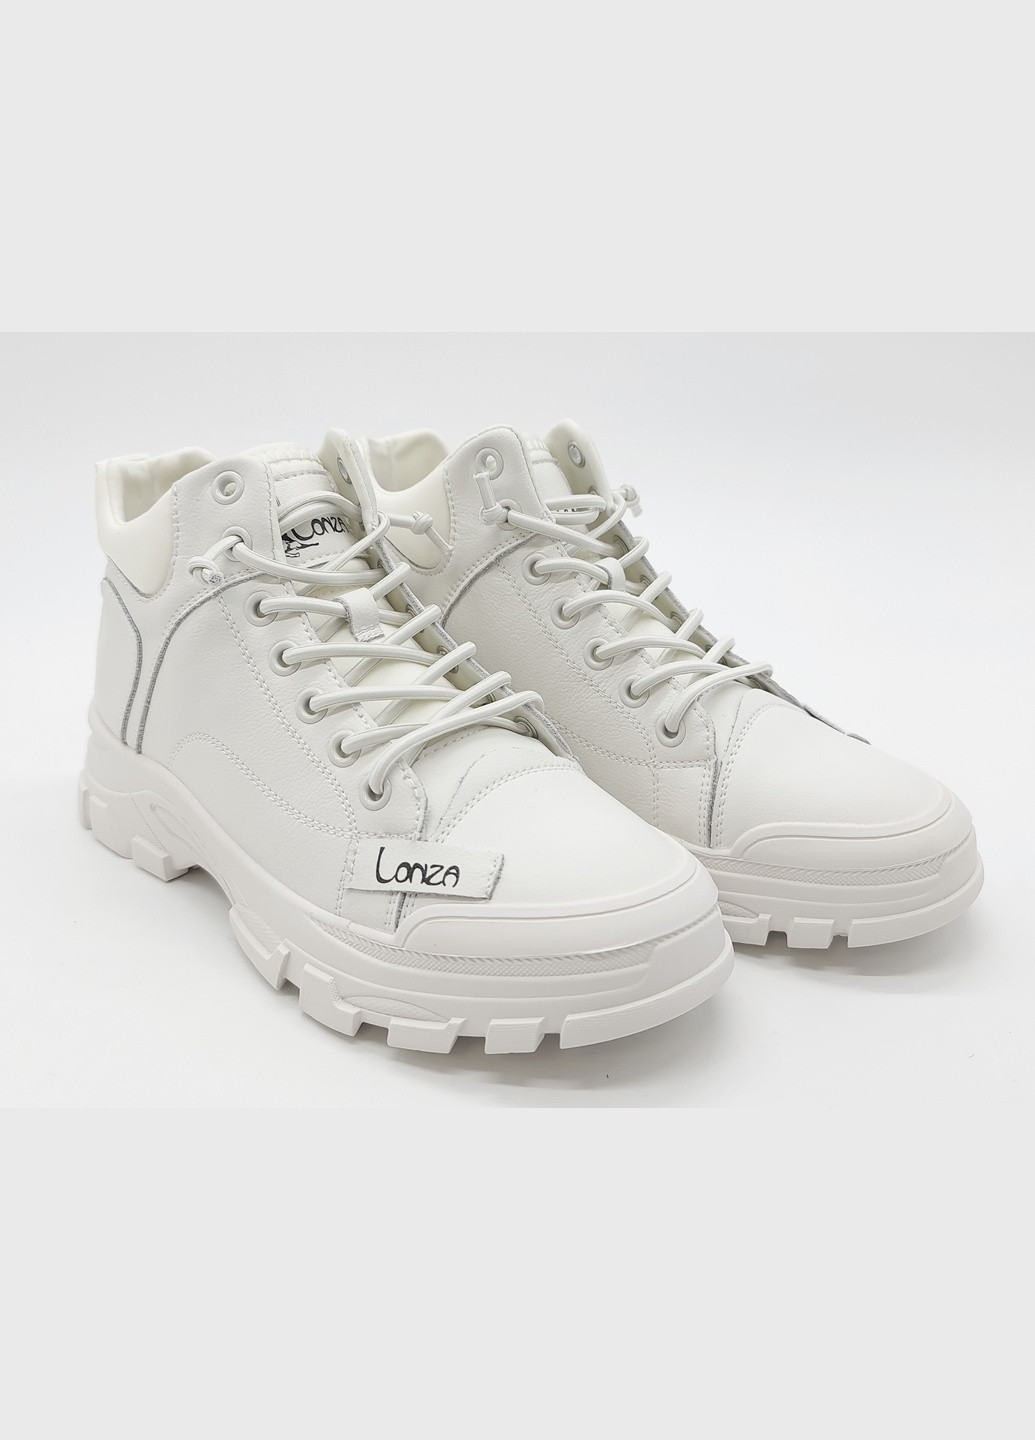 Осенние женские ботинки белые кожаные l-11-4 23 см (р) Lonza